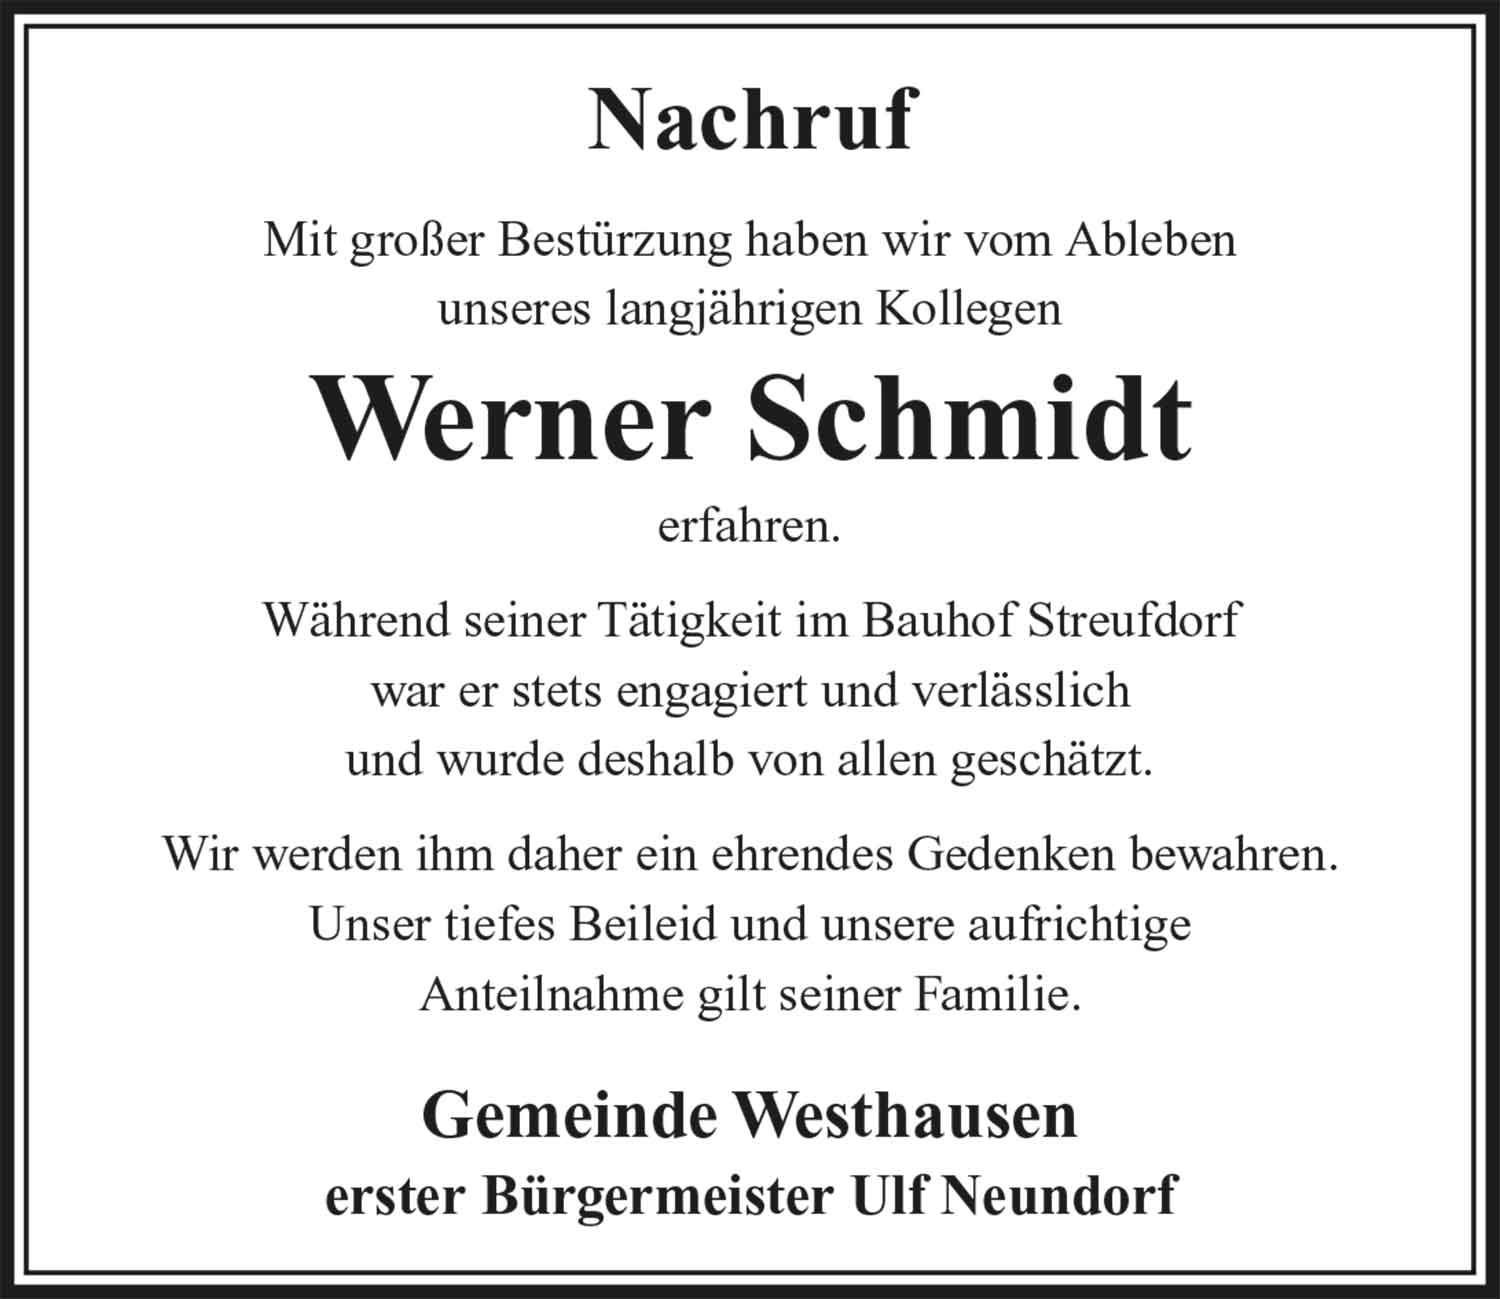 Nachruf_Werner_Schmidt